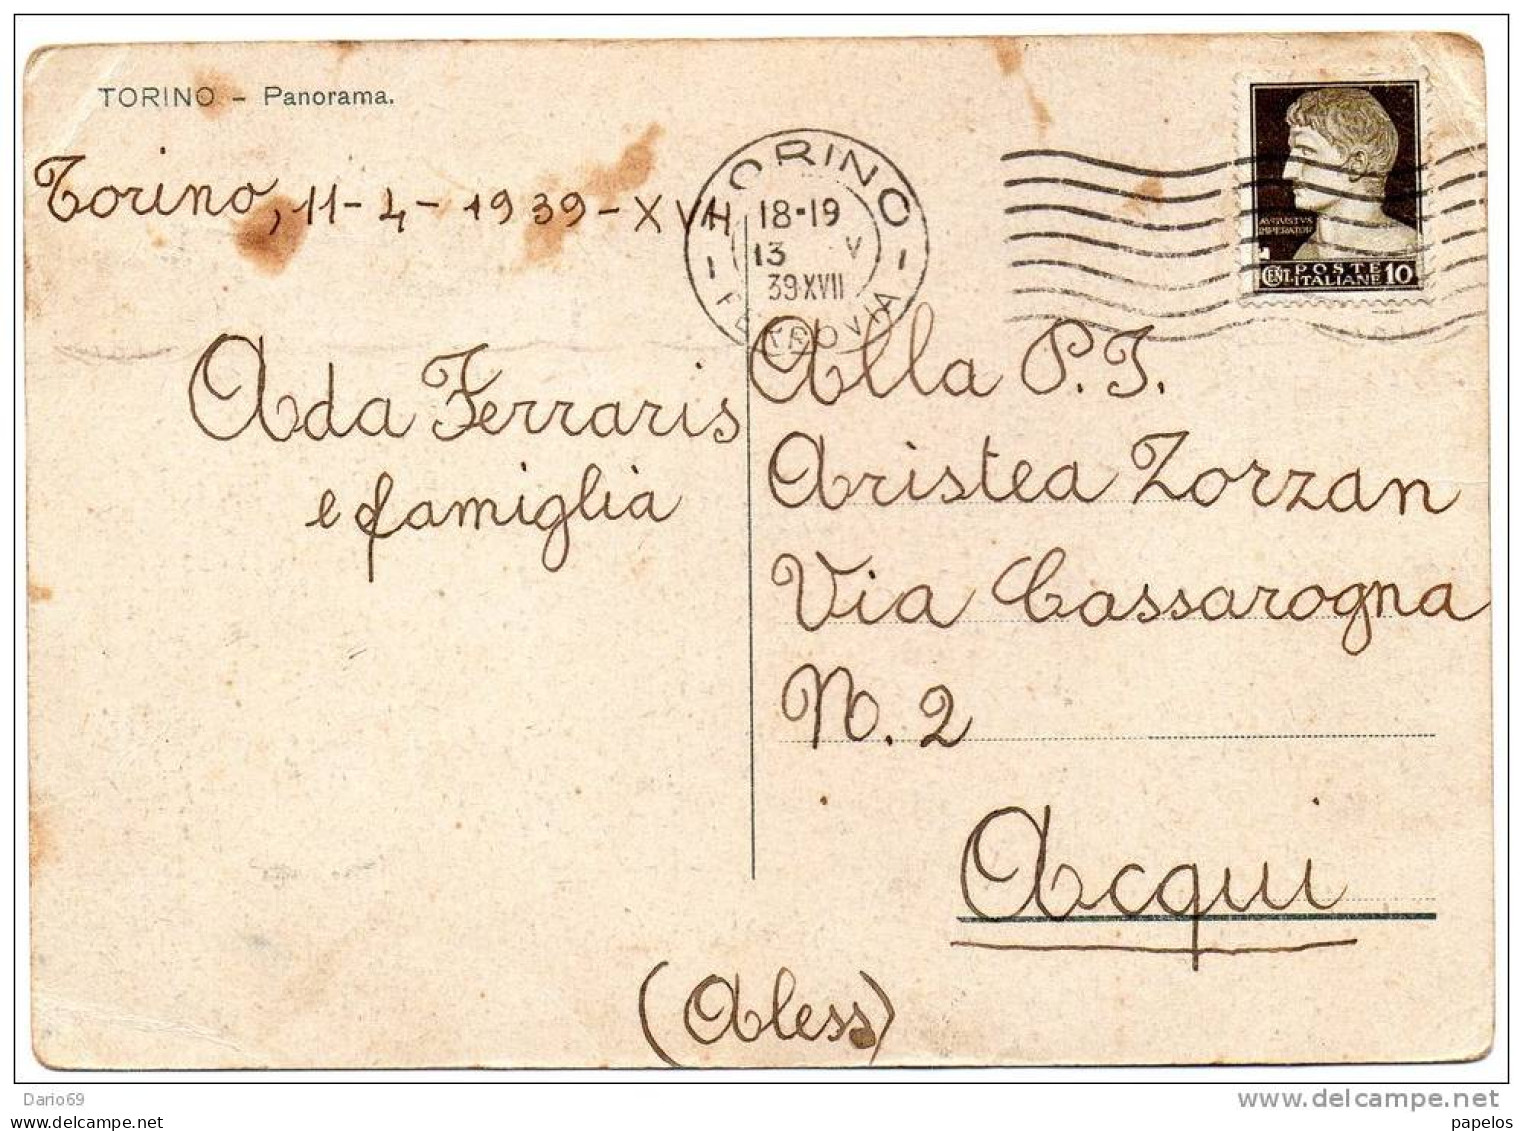 1939 - TORINO - PANORAMA - Panoramische Zichten, Meerdere Zichten